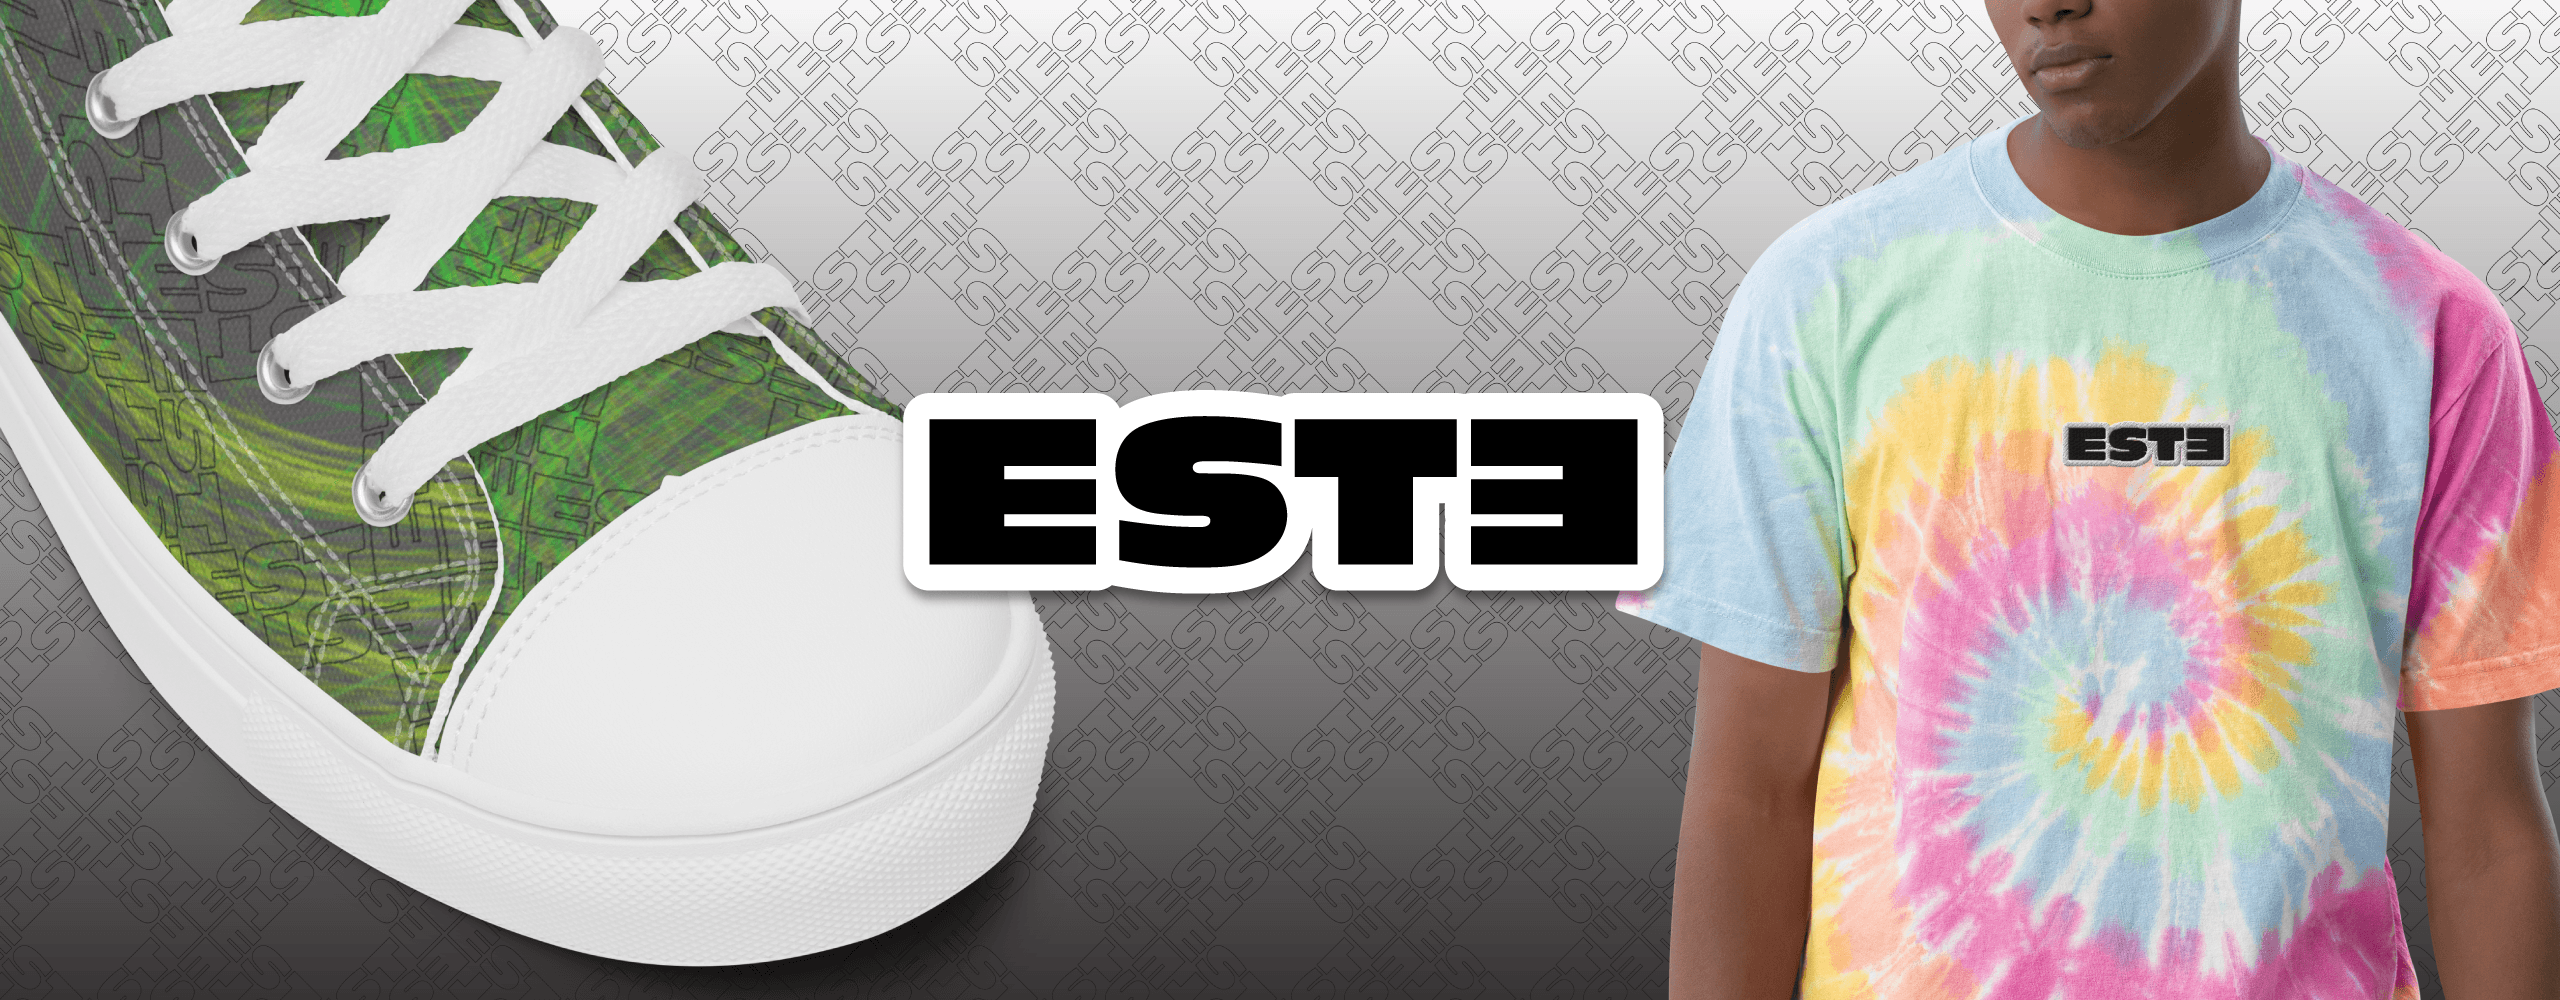 ESTE-global 橫幅